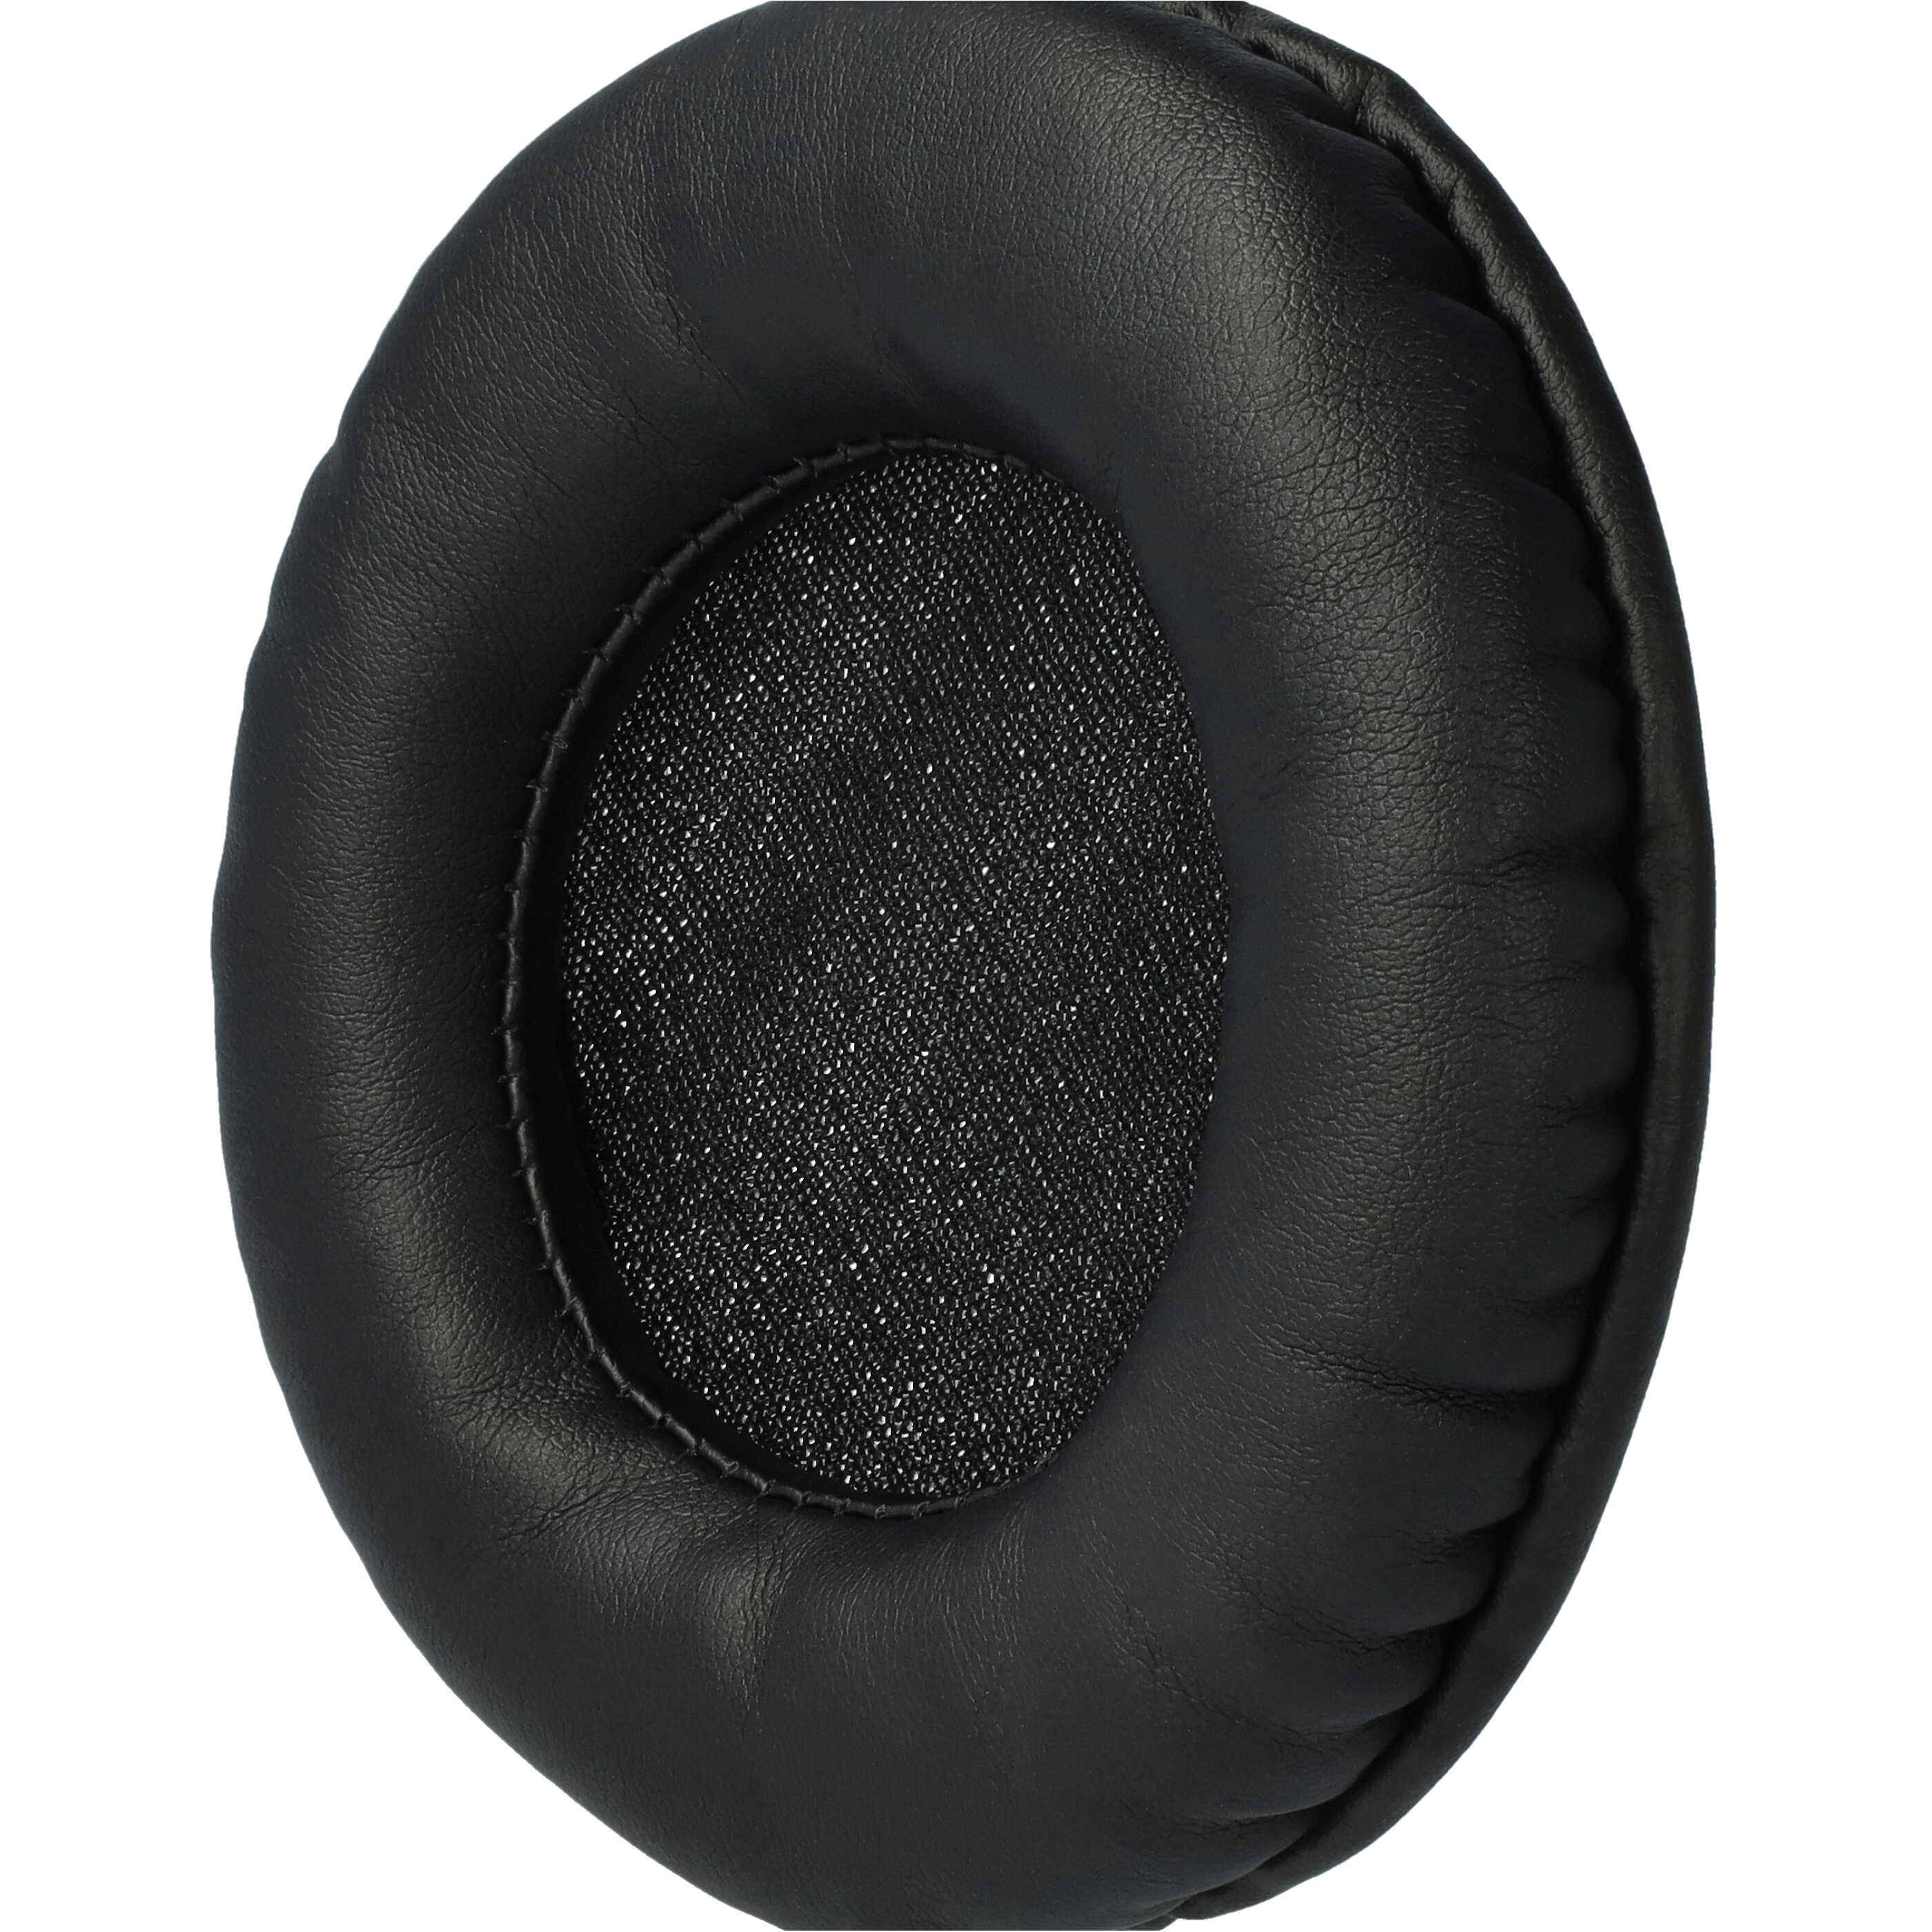 2x Coussinets d'oreille pour casque Technics RP-DH1200 - Avec mémoire de forme, polyuréthane / mousse noir